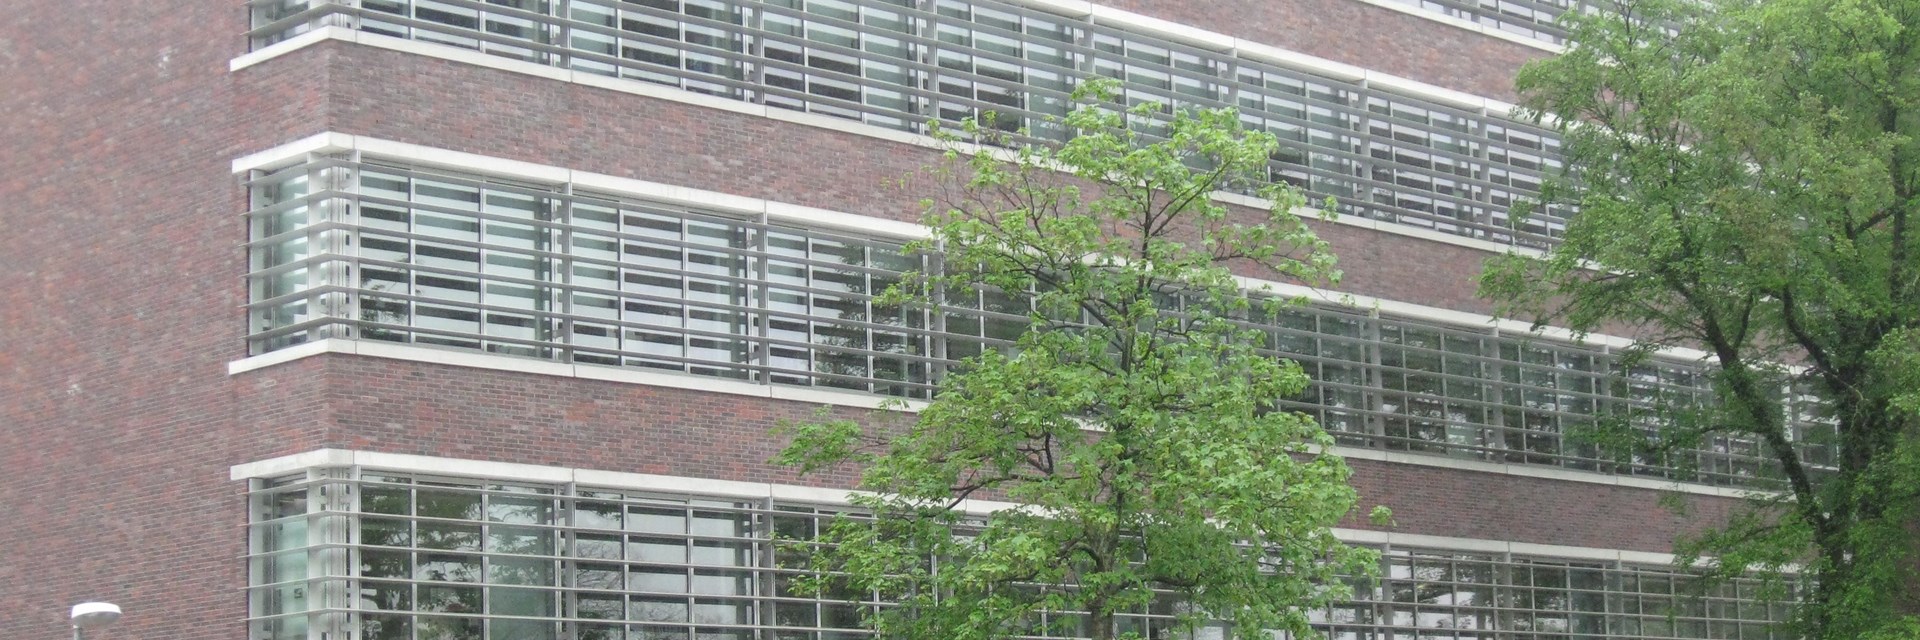 UKE Campus Forschungsgebäude